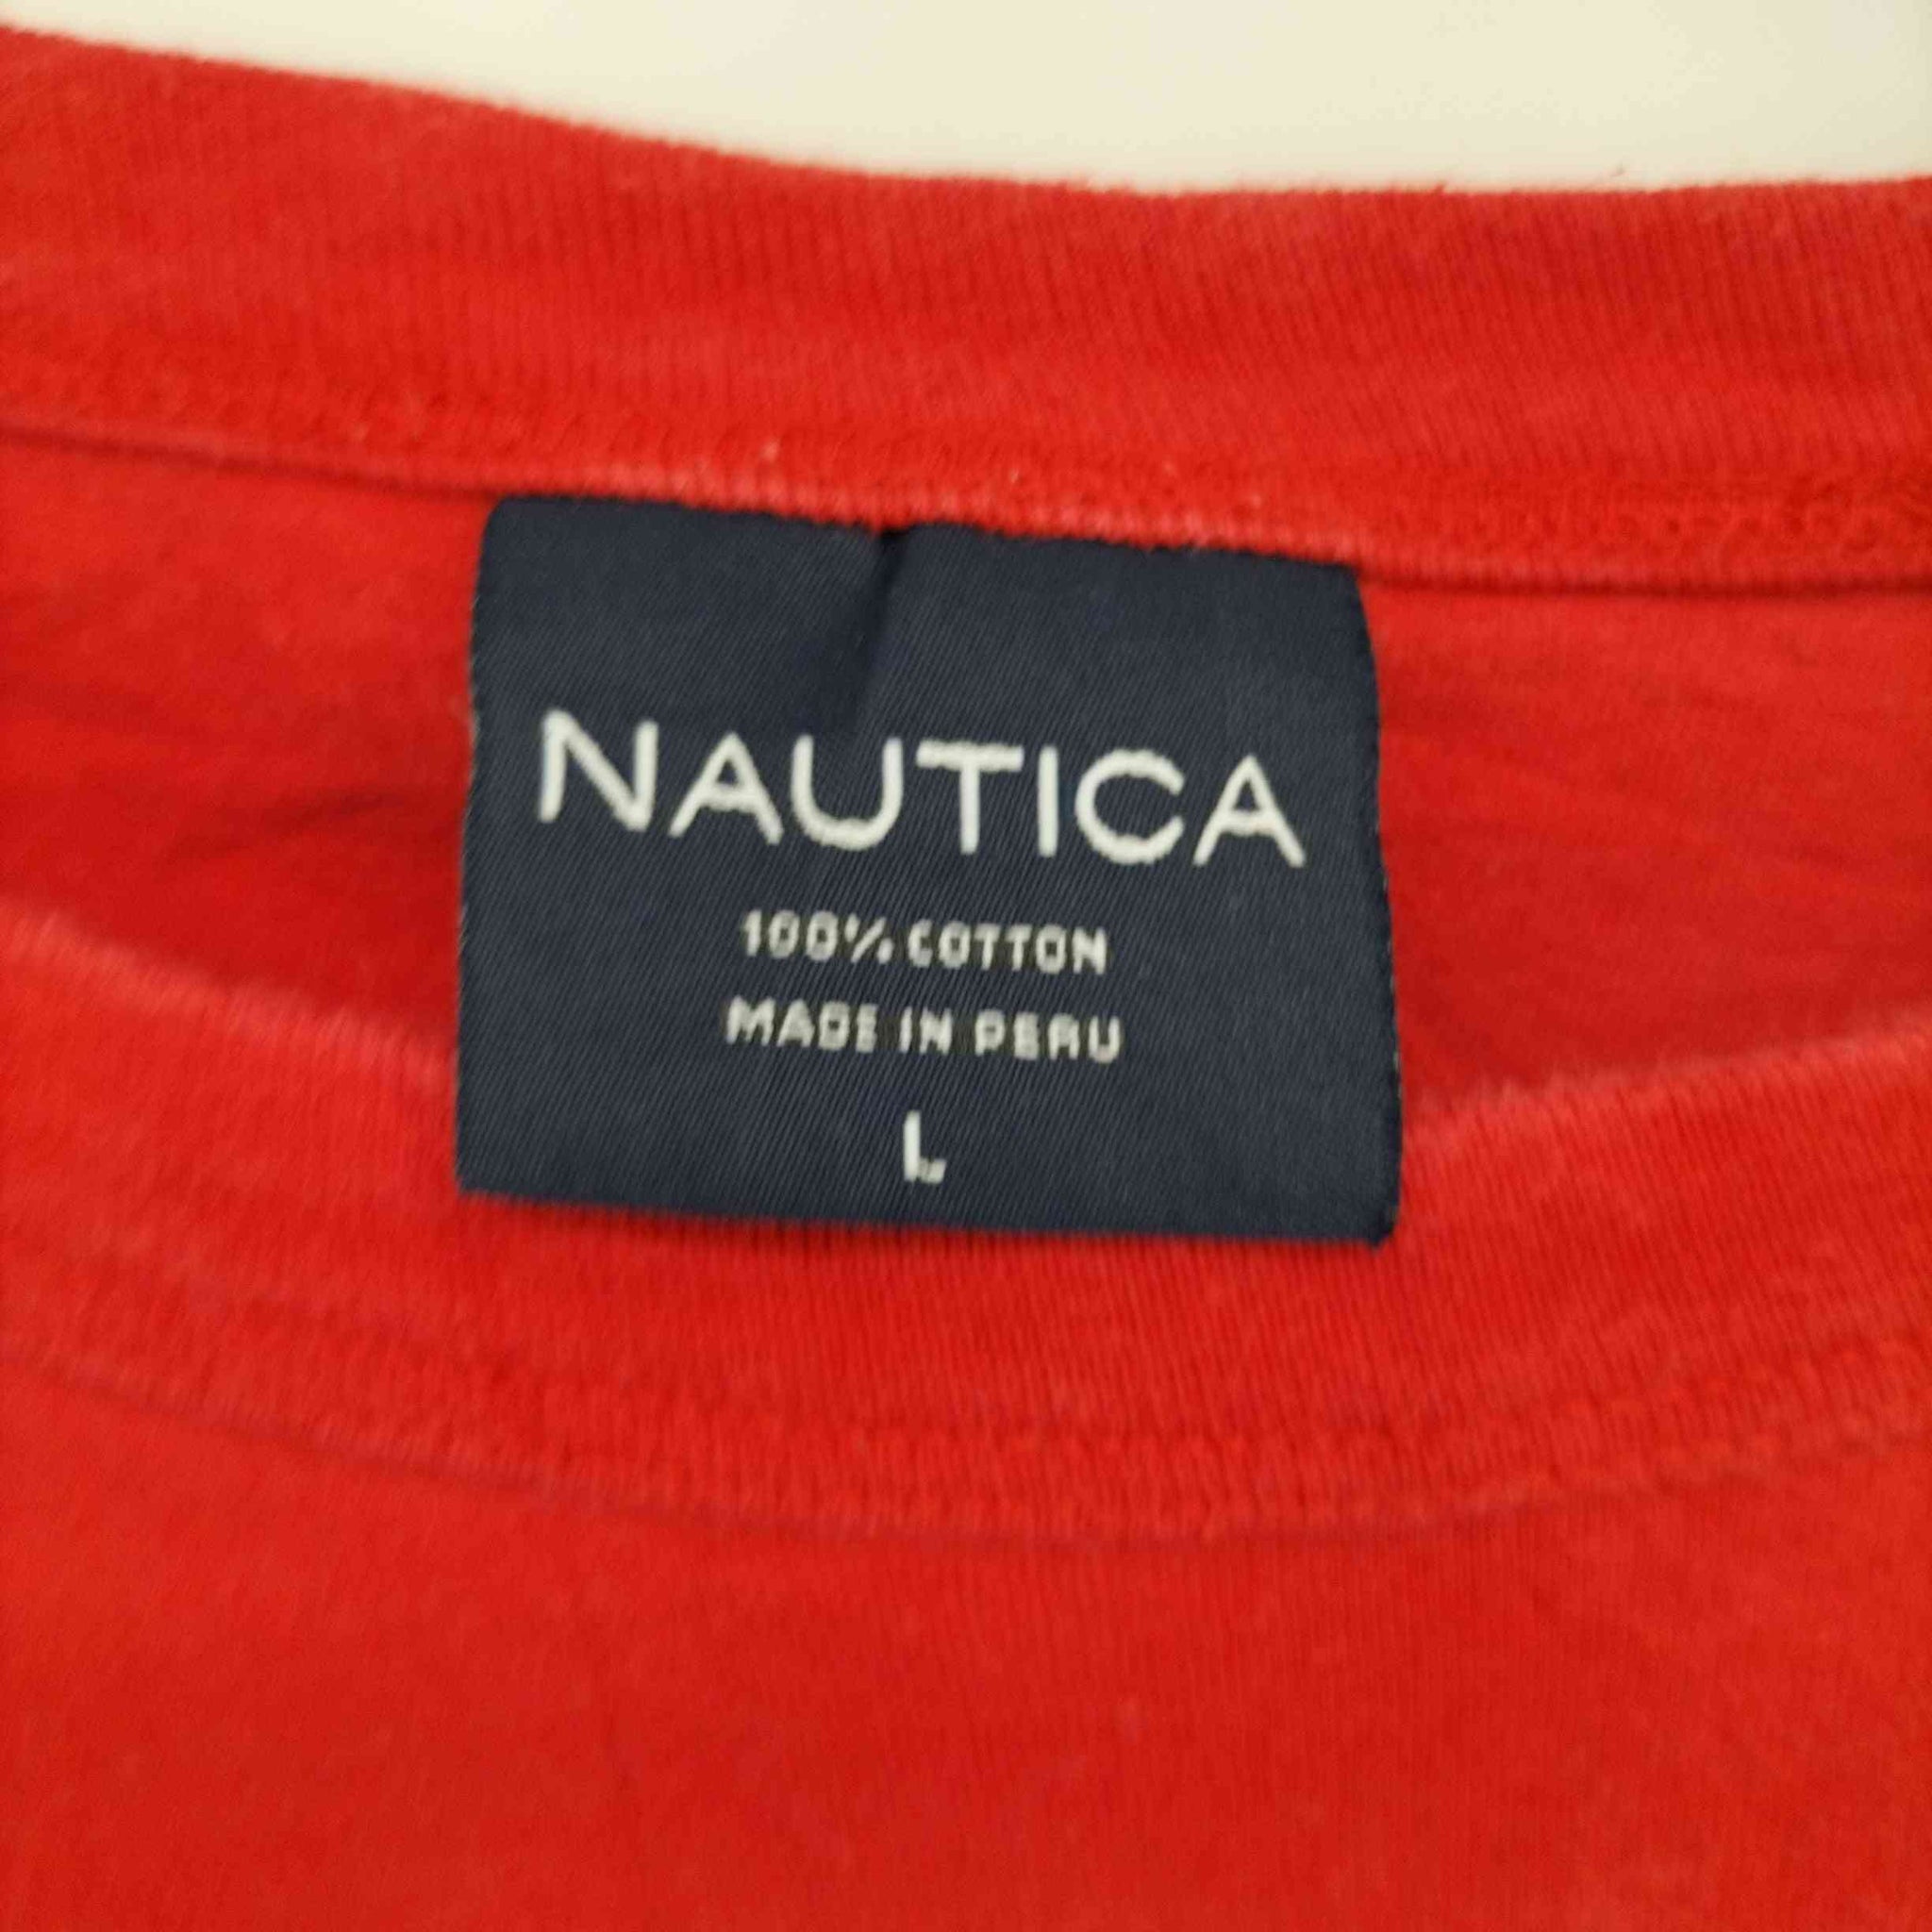 NAUTICA(ノーティカ)ロゴプリント S/S TEE